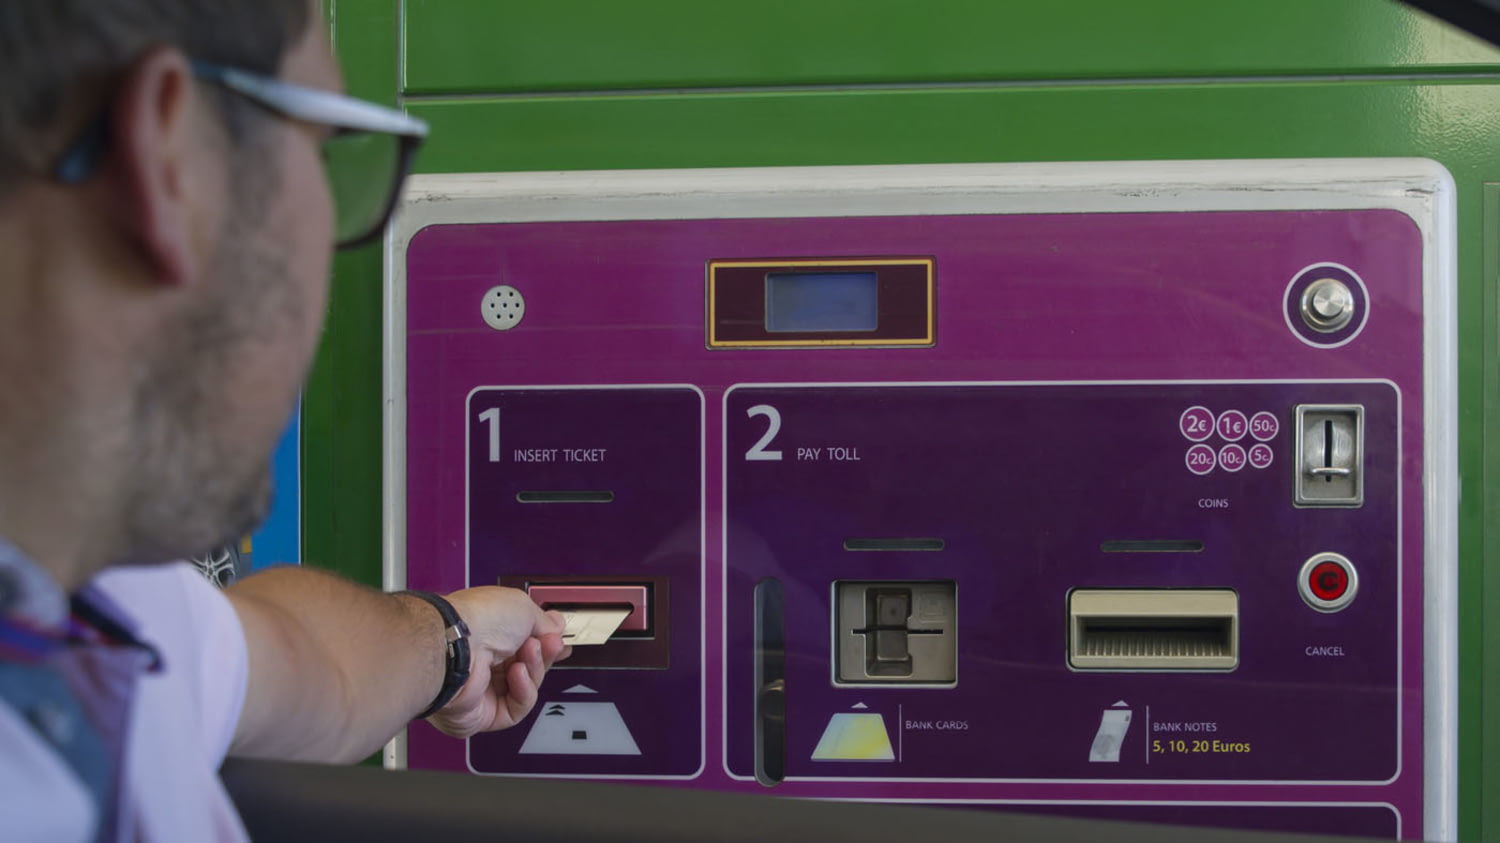 Mann bezahlt die fällige Gebühr an einer Mautstation mit einer Kreditkarte am Automaten